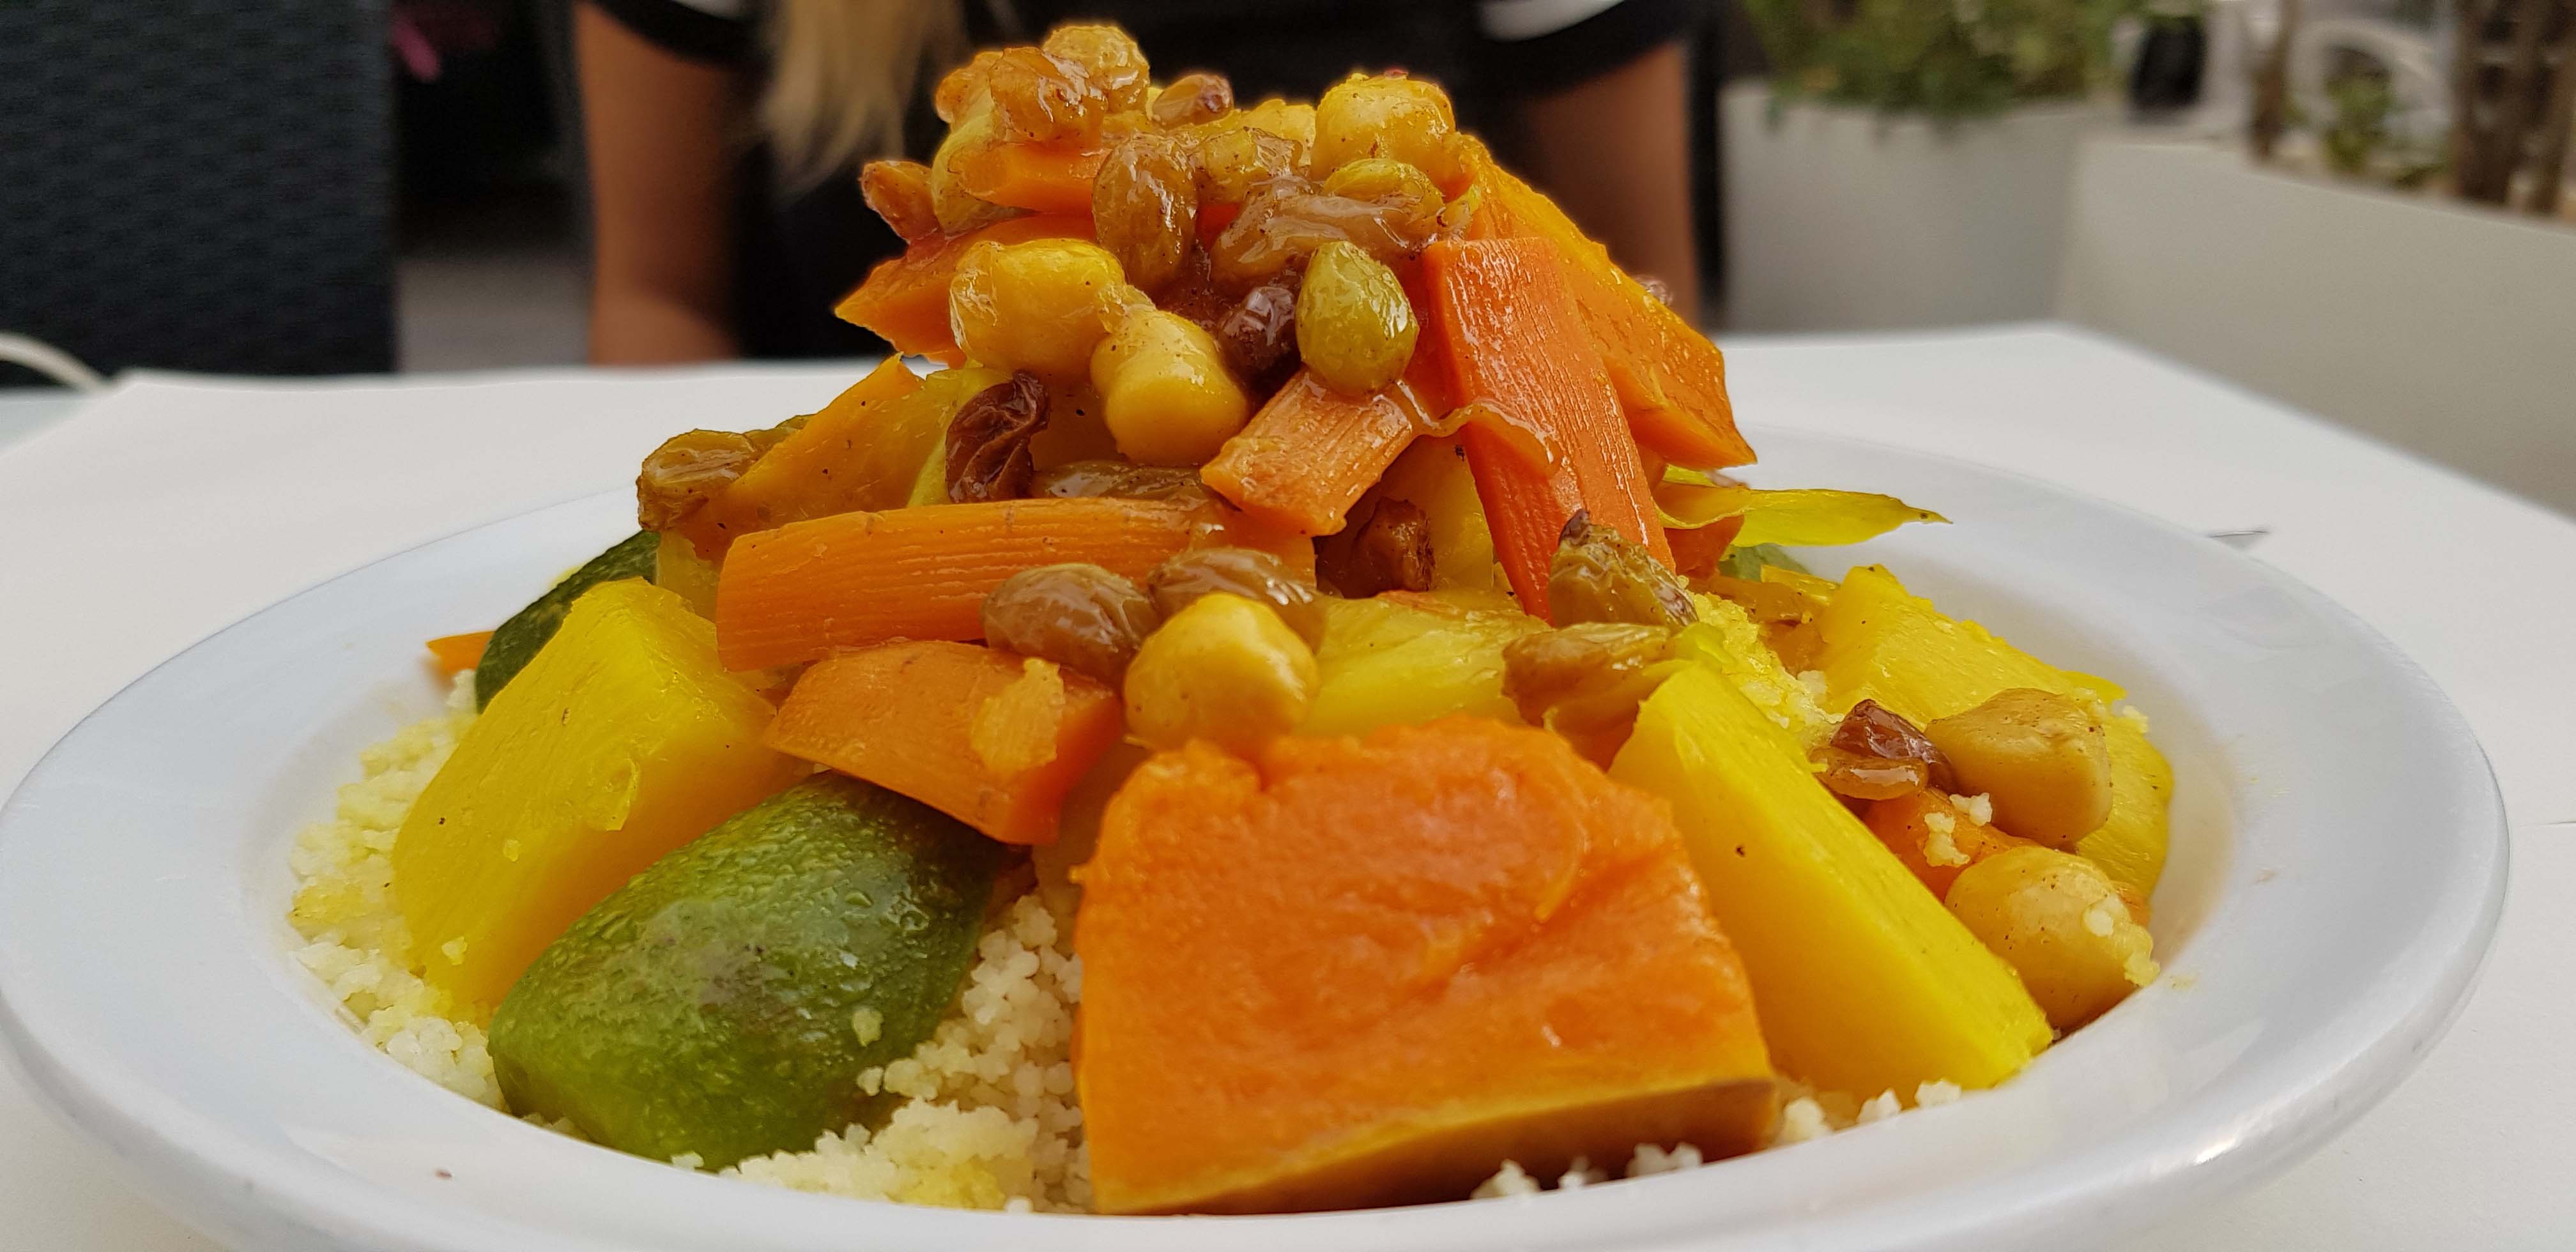 Vegan in Marokko: Gerichte, Restaurants und Produkte – The Vegan Travelers